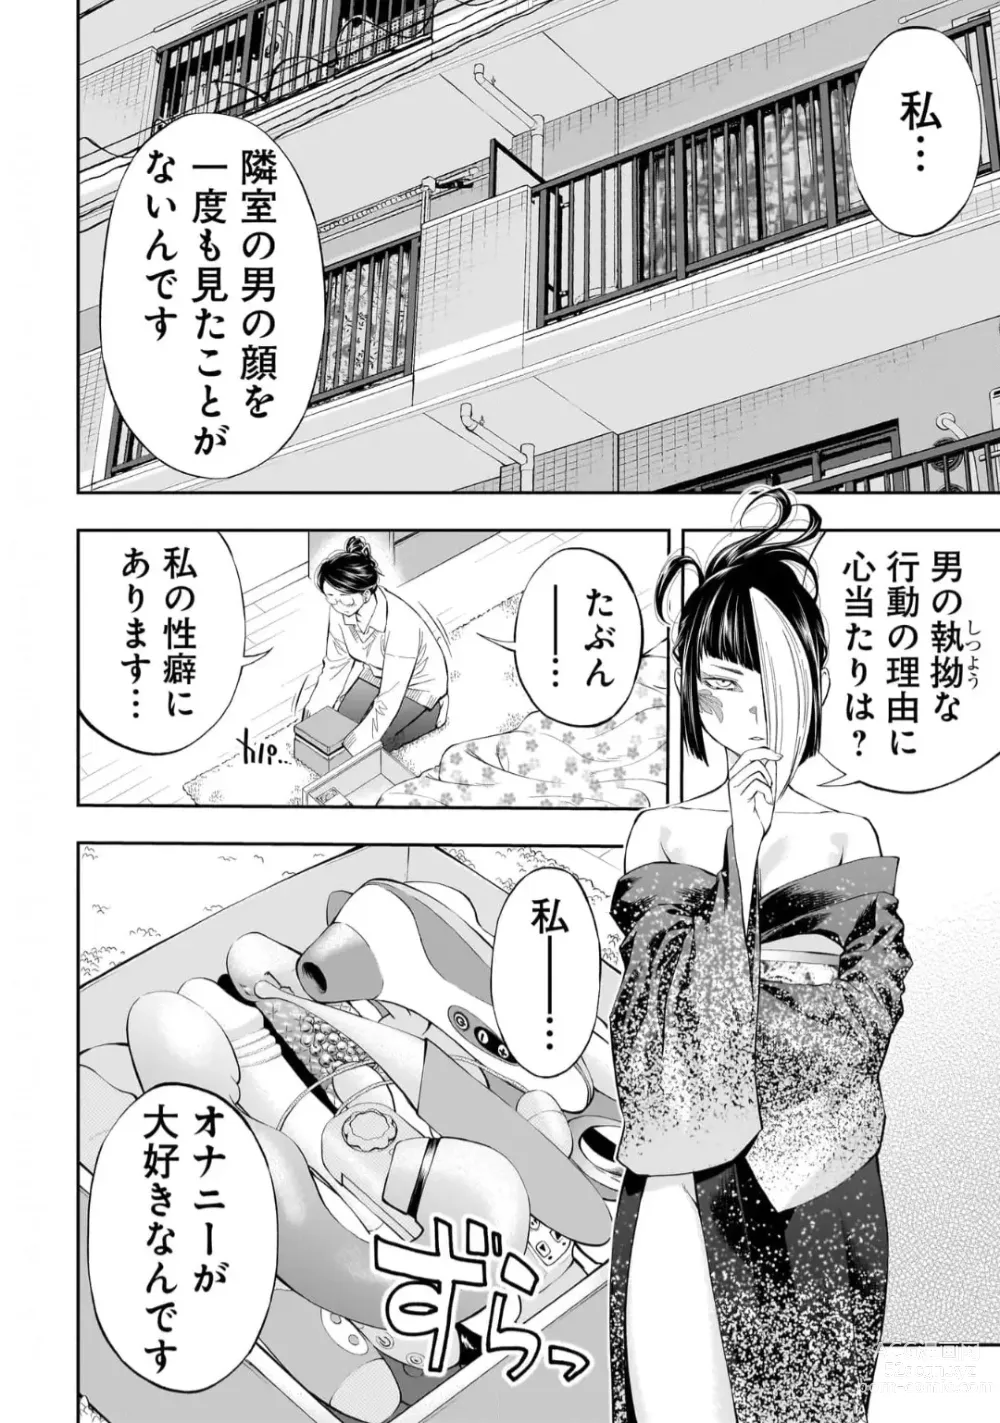 Page 7 of manga Kai Waidan Ch.3